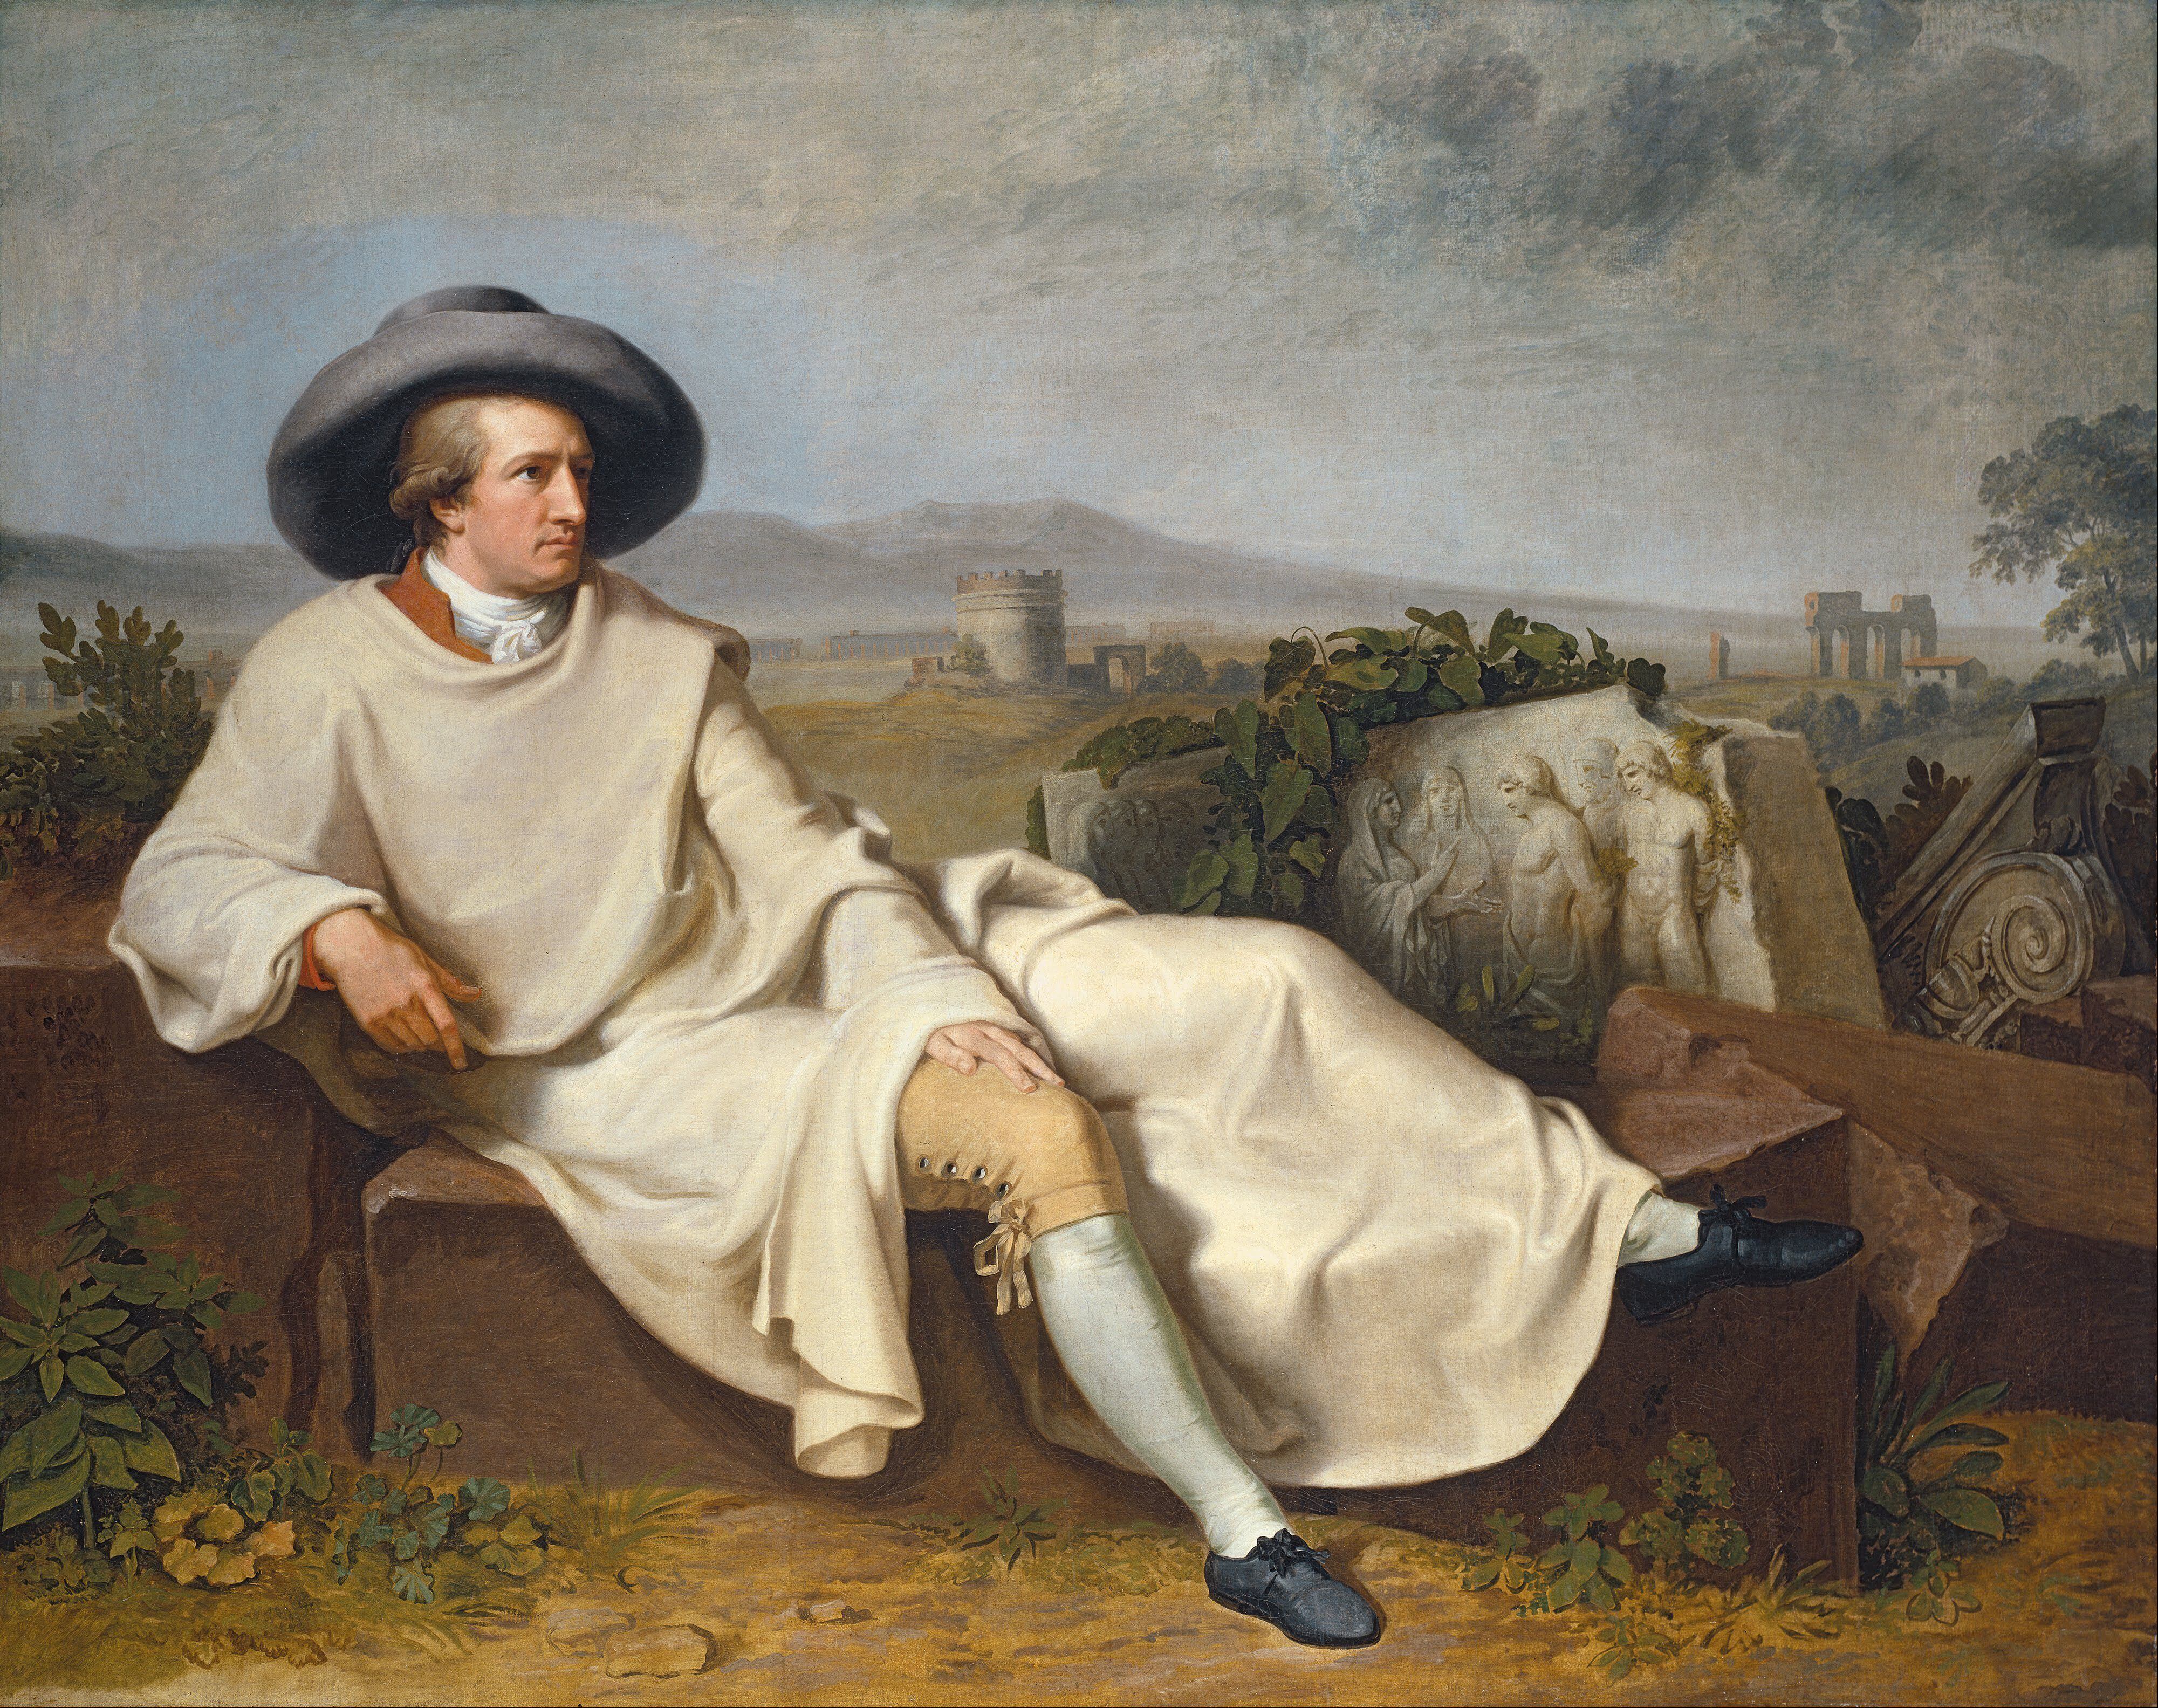 Em relação a todos os atos de Johann Goethe - Pensador